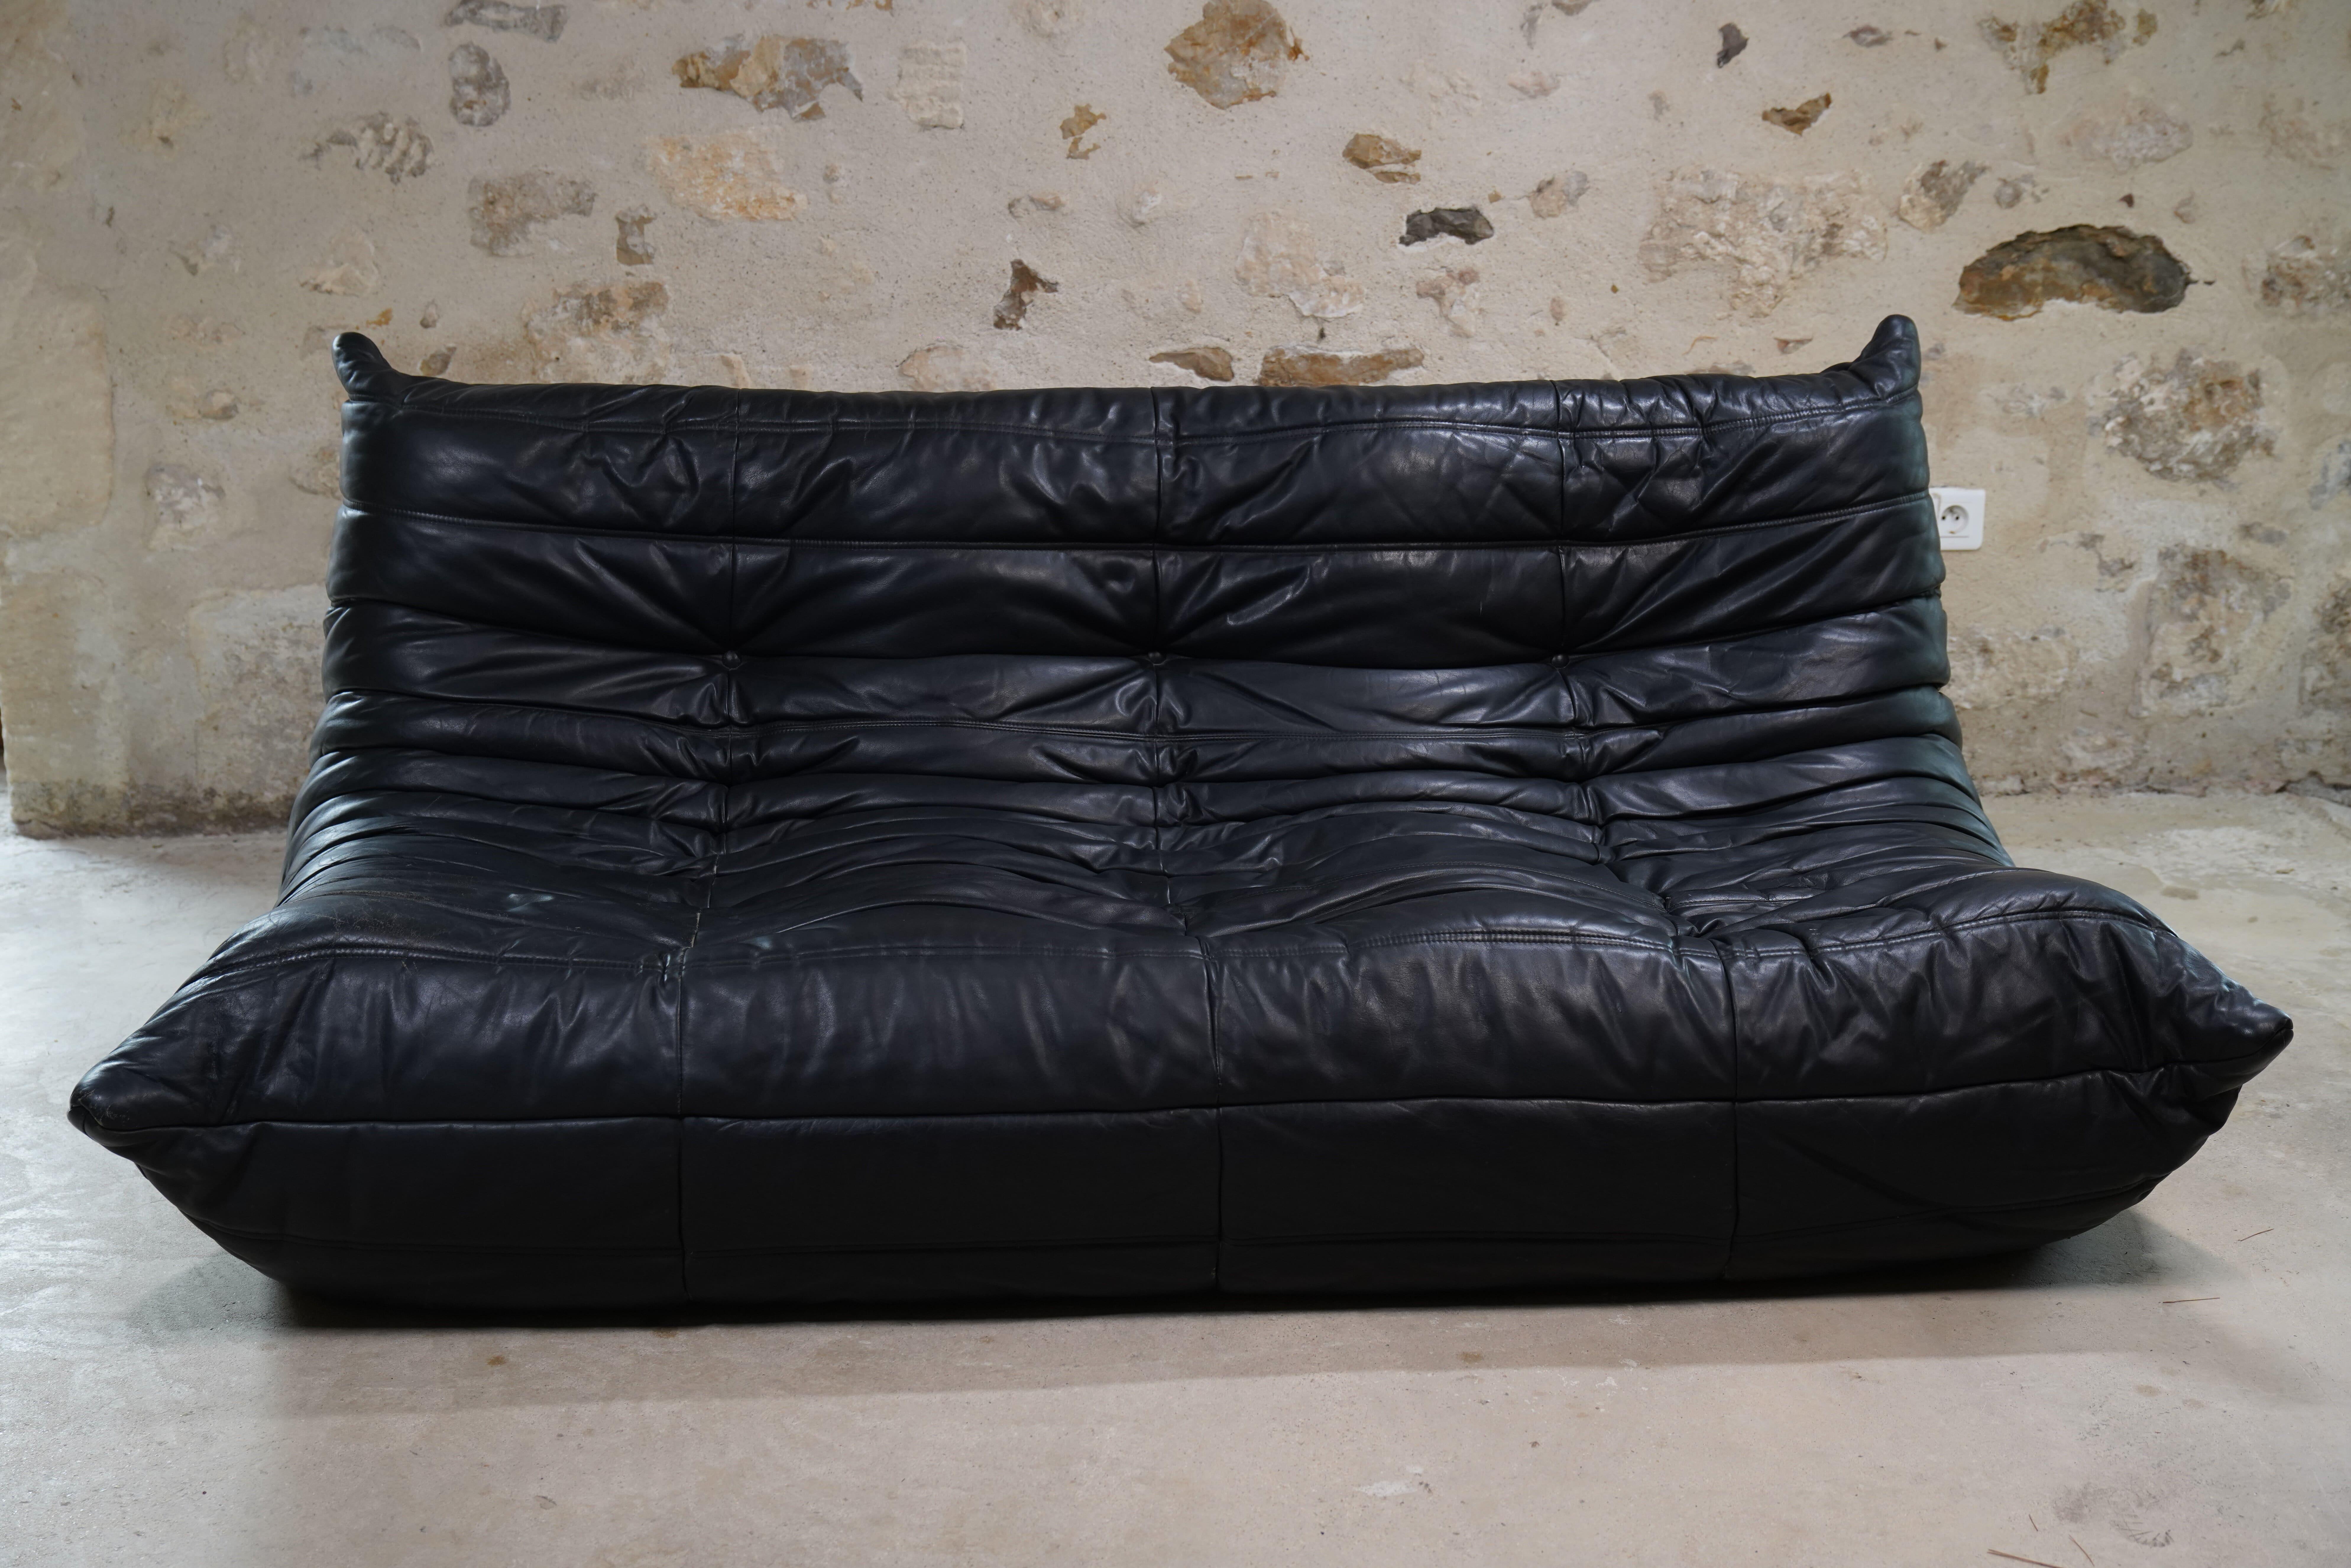 Wunderschönes 3-Sitzer-Sofa Togo aus schwarzem Leder, entworfen von Michel Ducaroy für Ligne Roset aus dem Jahr 1998.

Der Designer Michel Ducaroy ließ sich für das Design des Togo von einer Aluminium-Zahnpastatube inspirieren, die sich wie ein